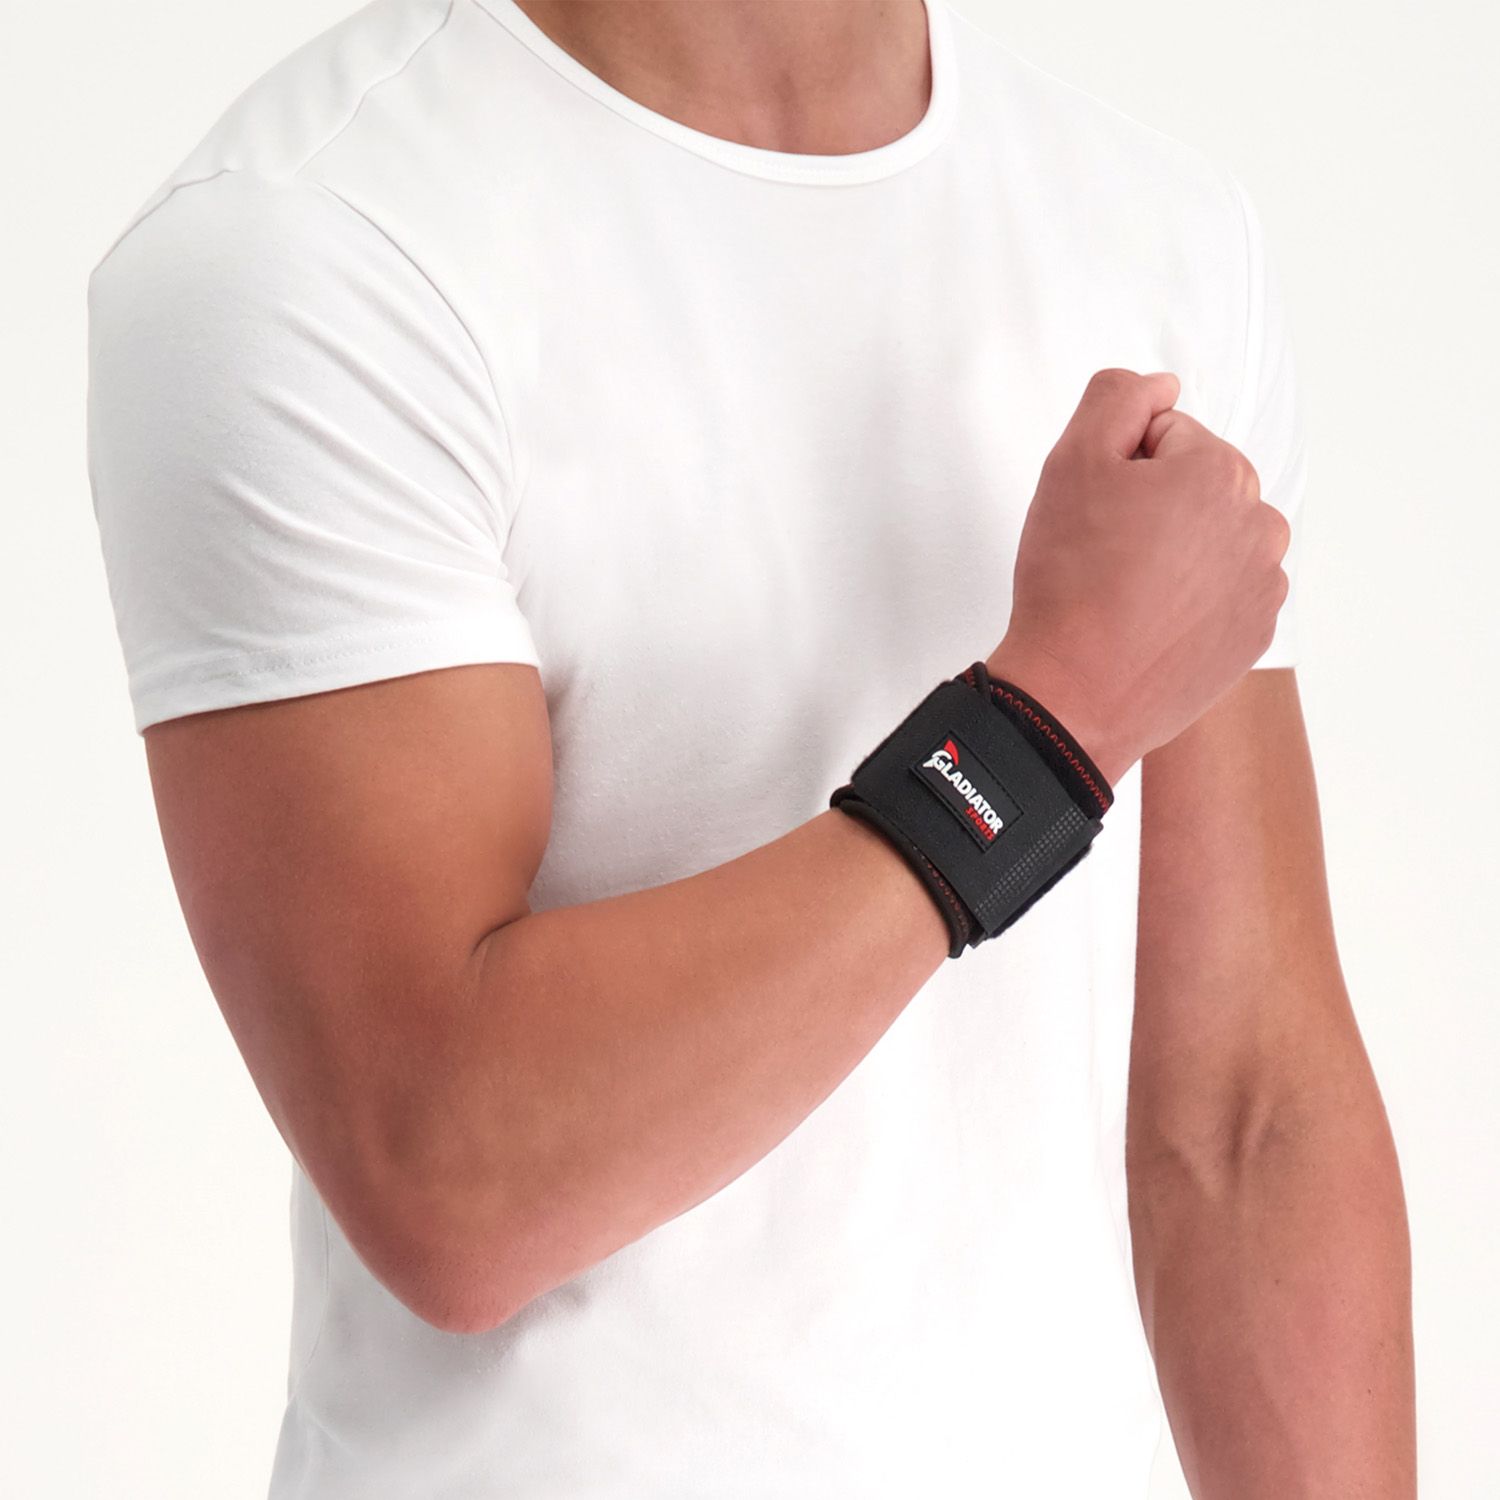 gladiator sports wrist wrap worn by model